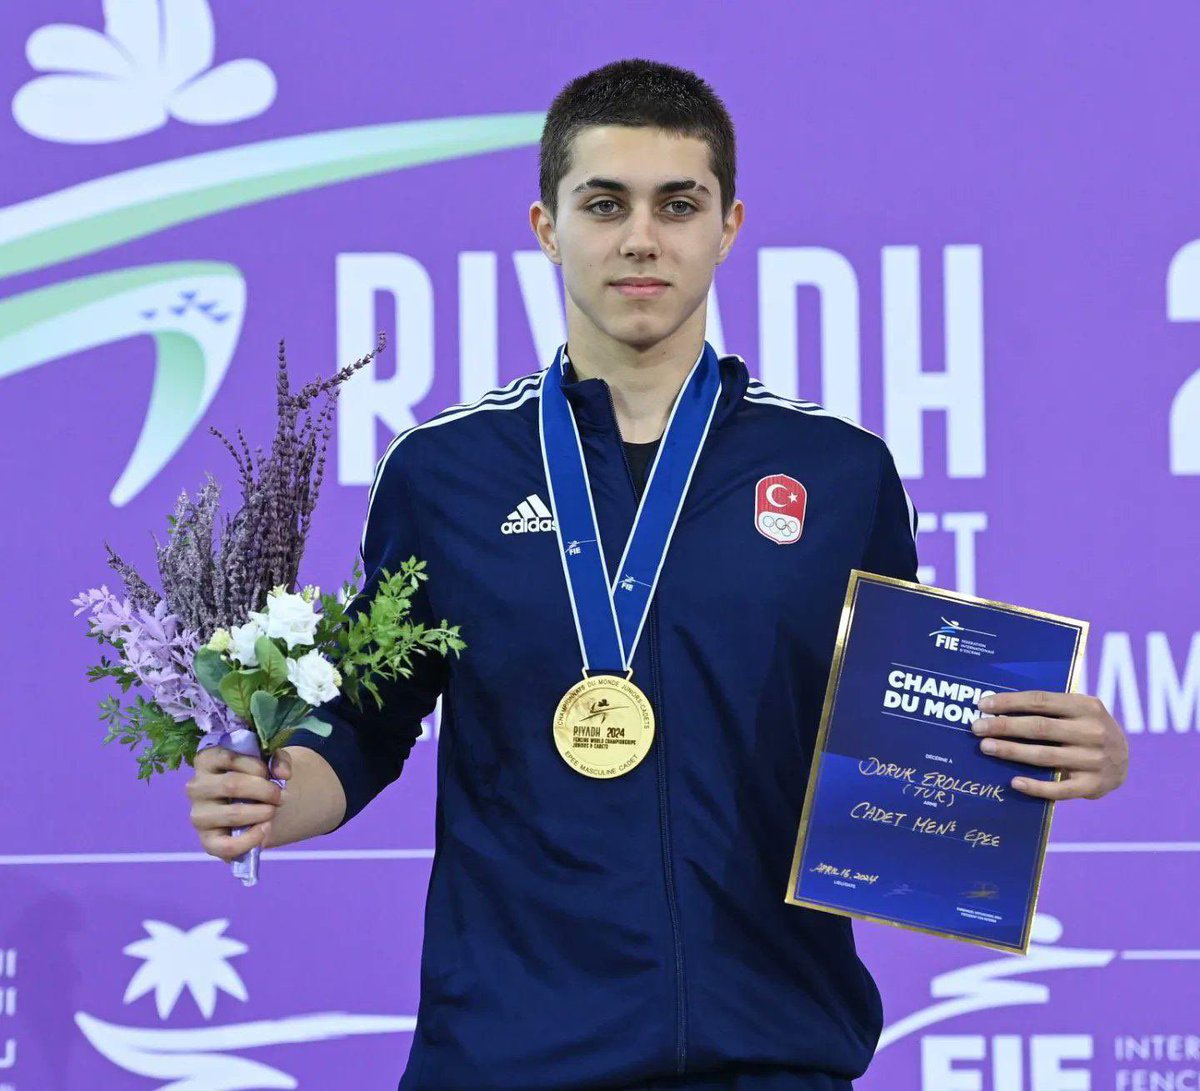 Dünya Gençler ve Yıldızlar Eskrim Şampiyonası’nda yıldız erkekler epe kategorisinde altın madalya kazanan Doruk Erolçevik’i canıgönülden kutluyorum. 🥇🇹🇷 Tebrikler Doruk👏